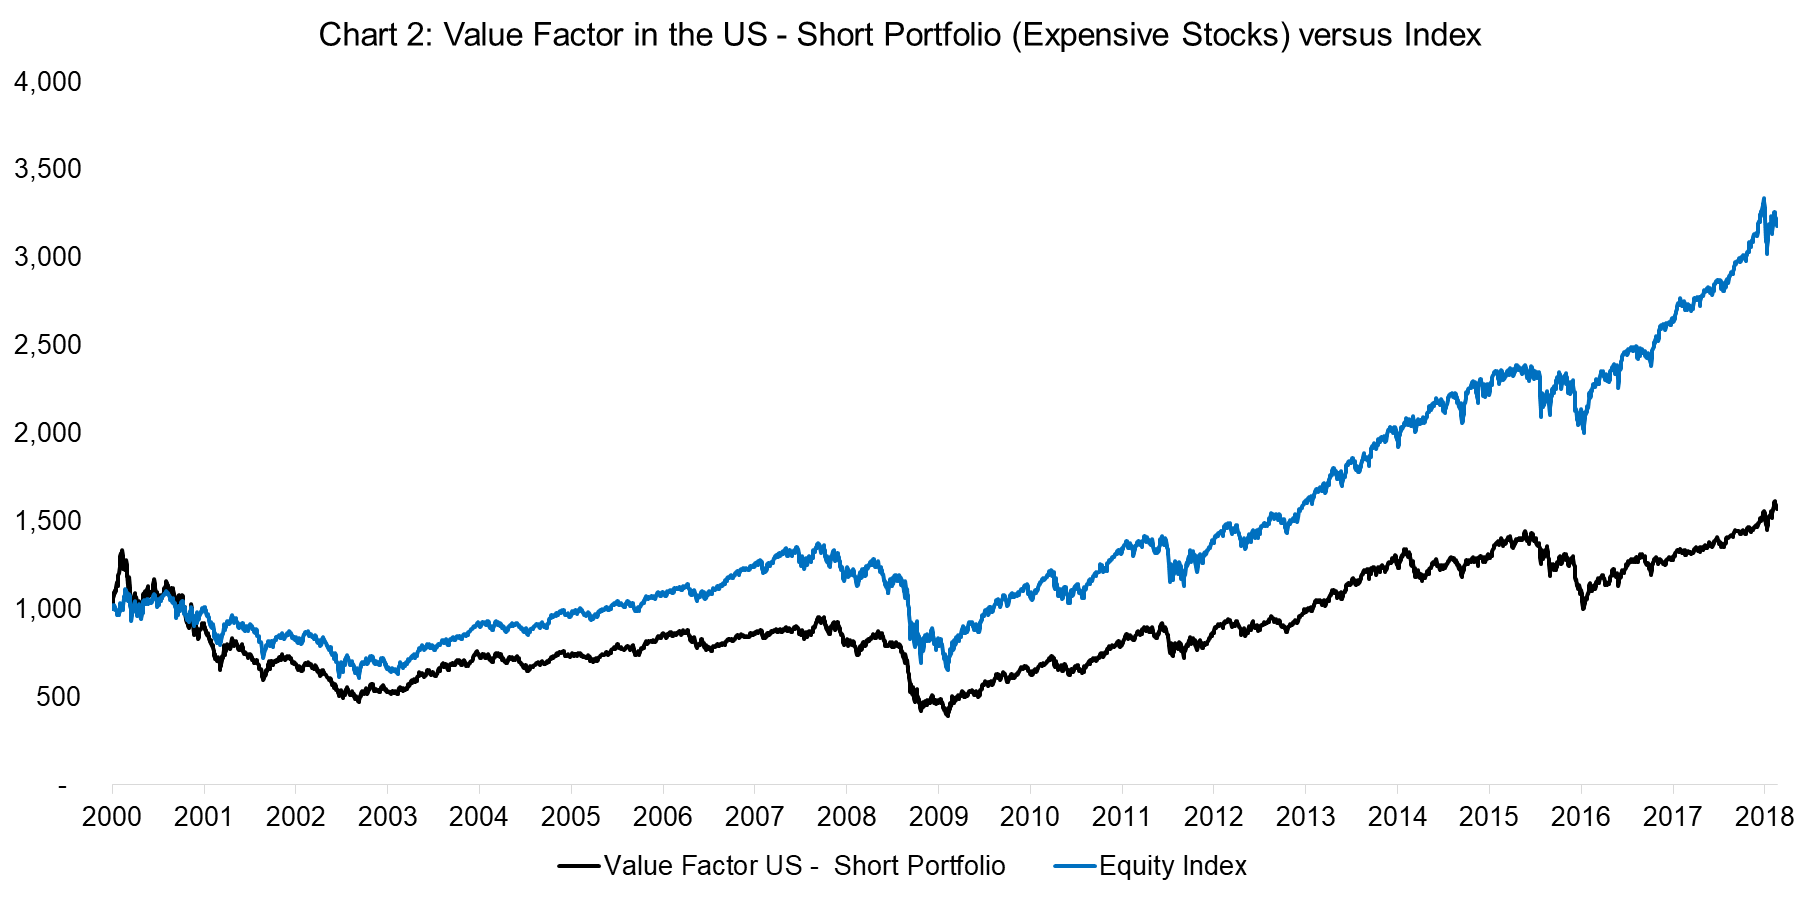 Value Factor in the US - Short Portfolio versus Index